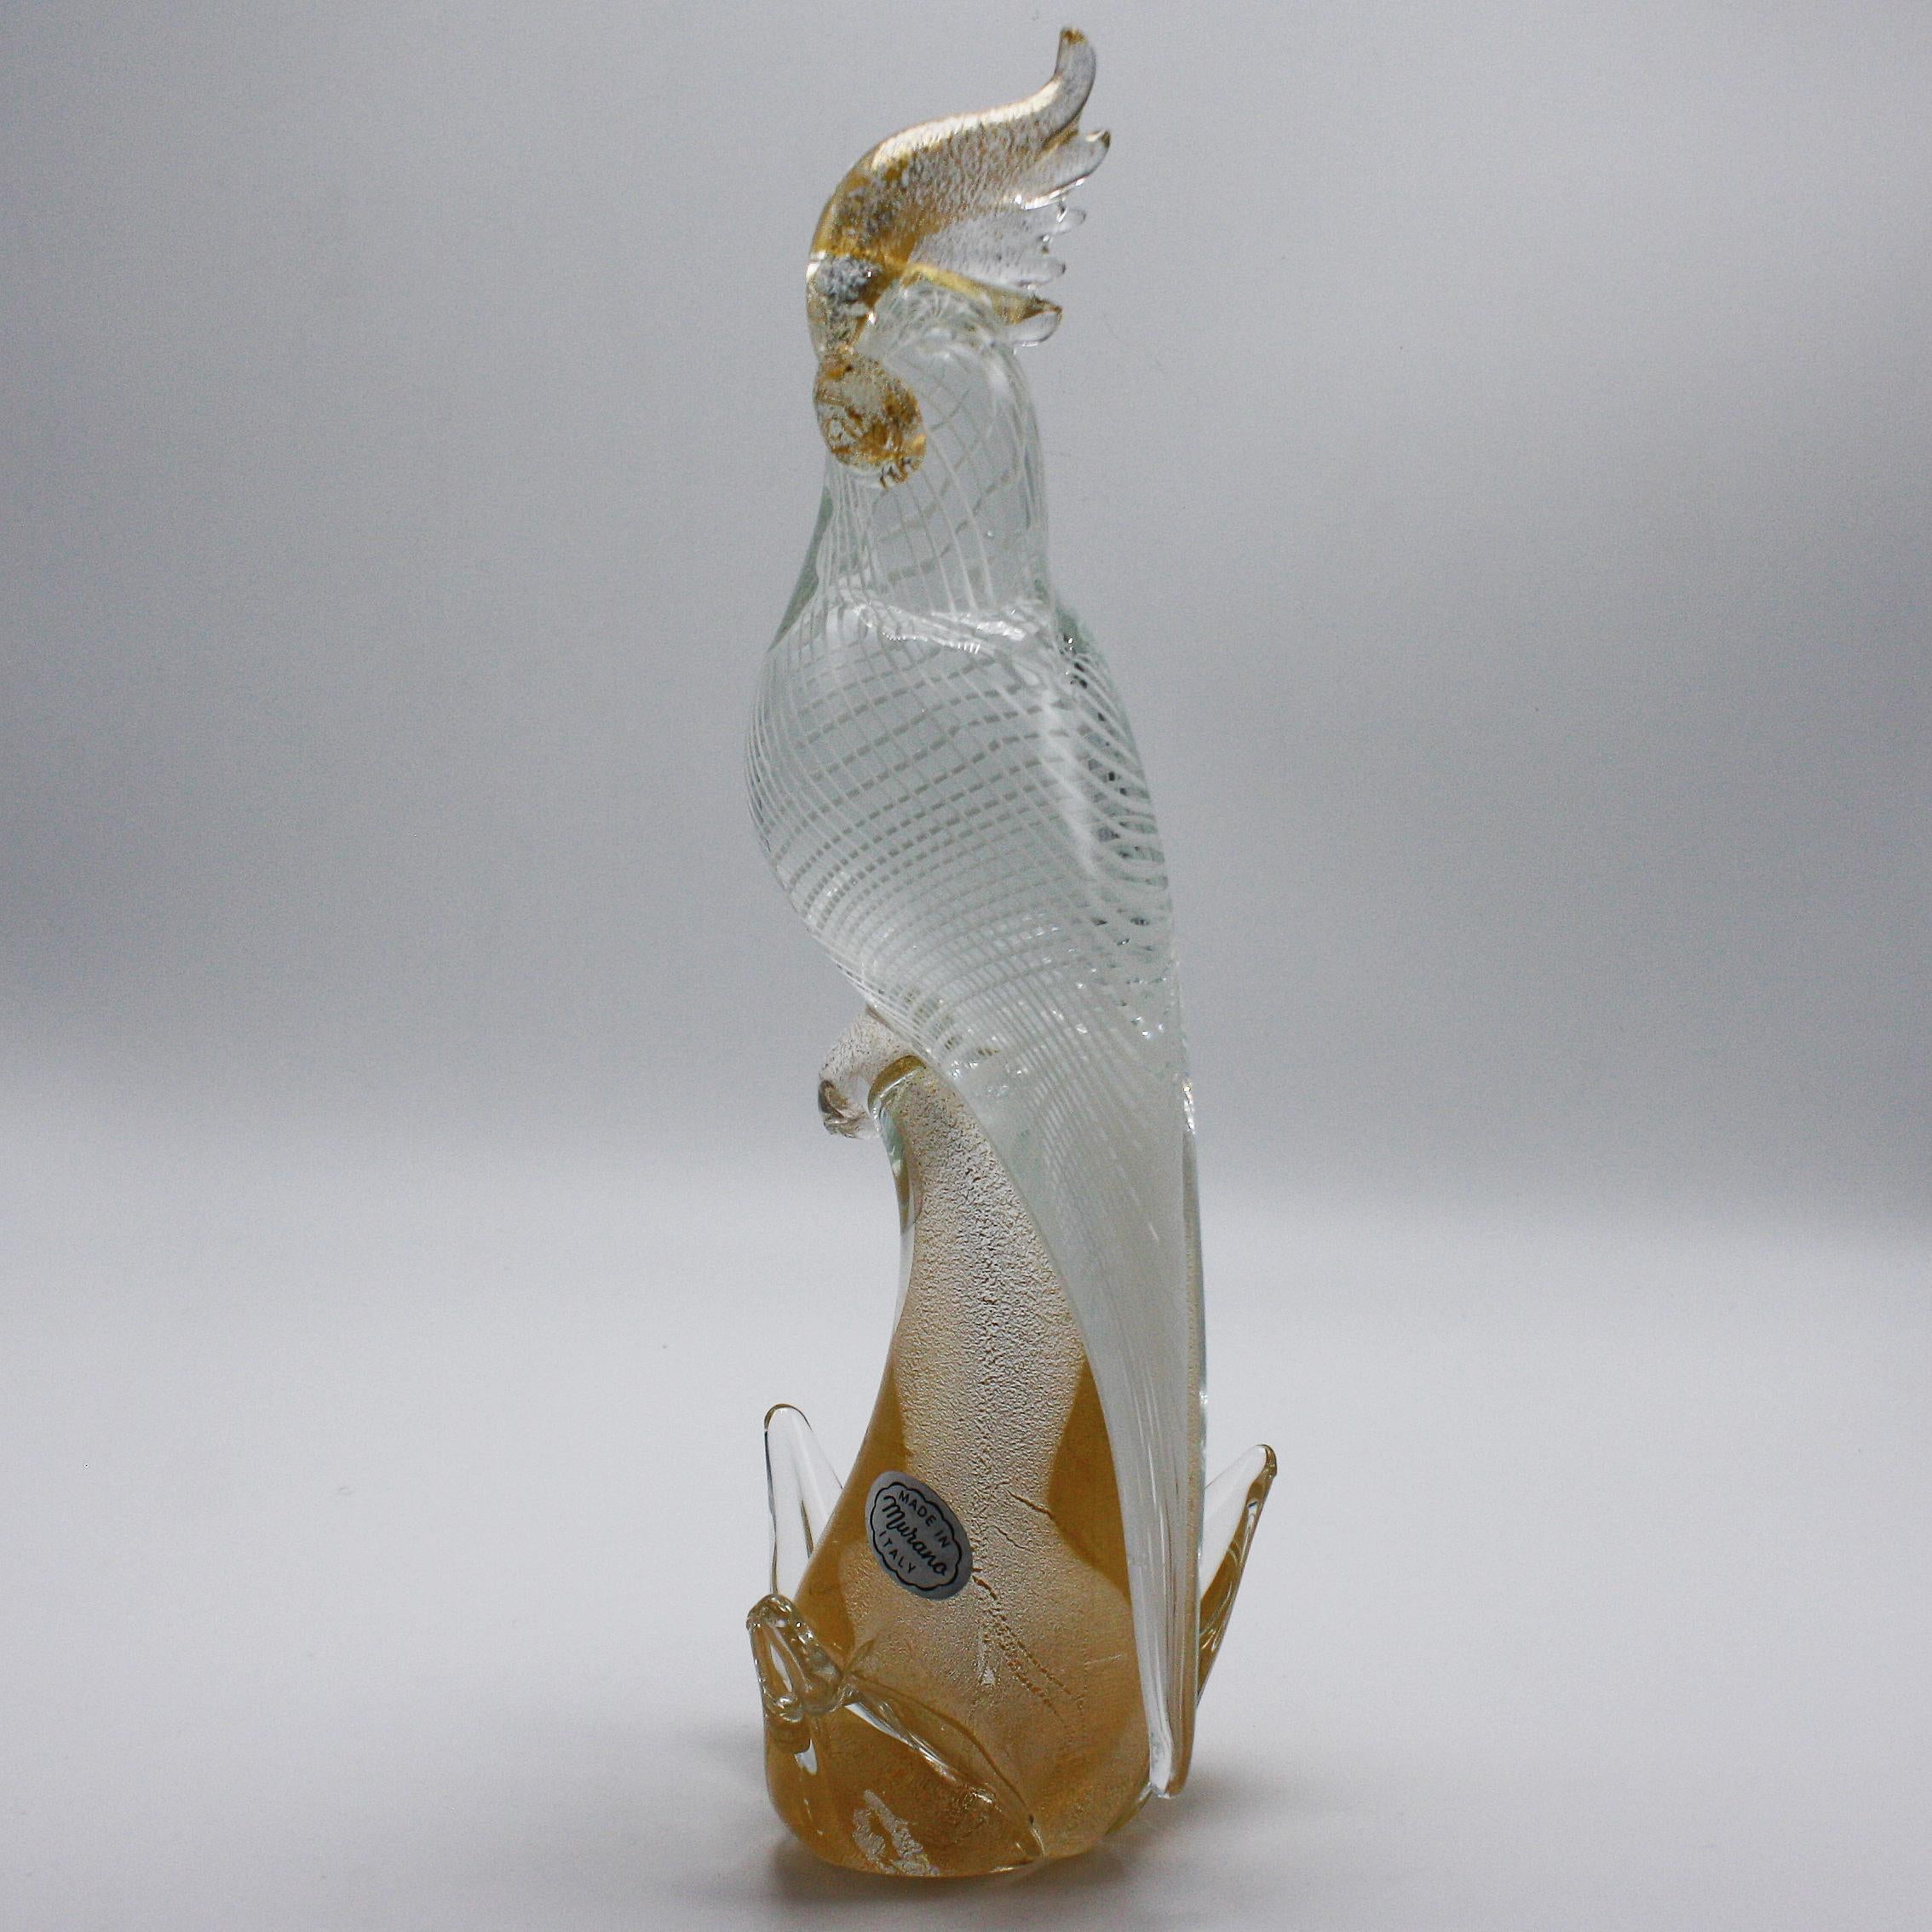 White and gold Murano glass bird, circa 1960
$875.